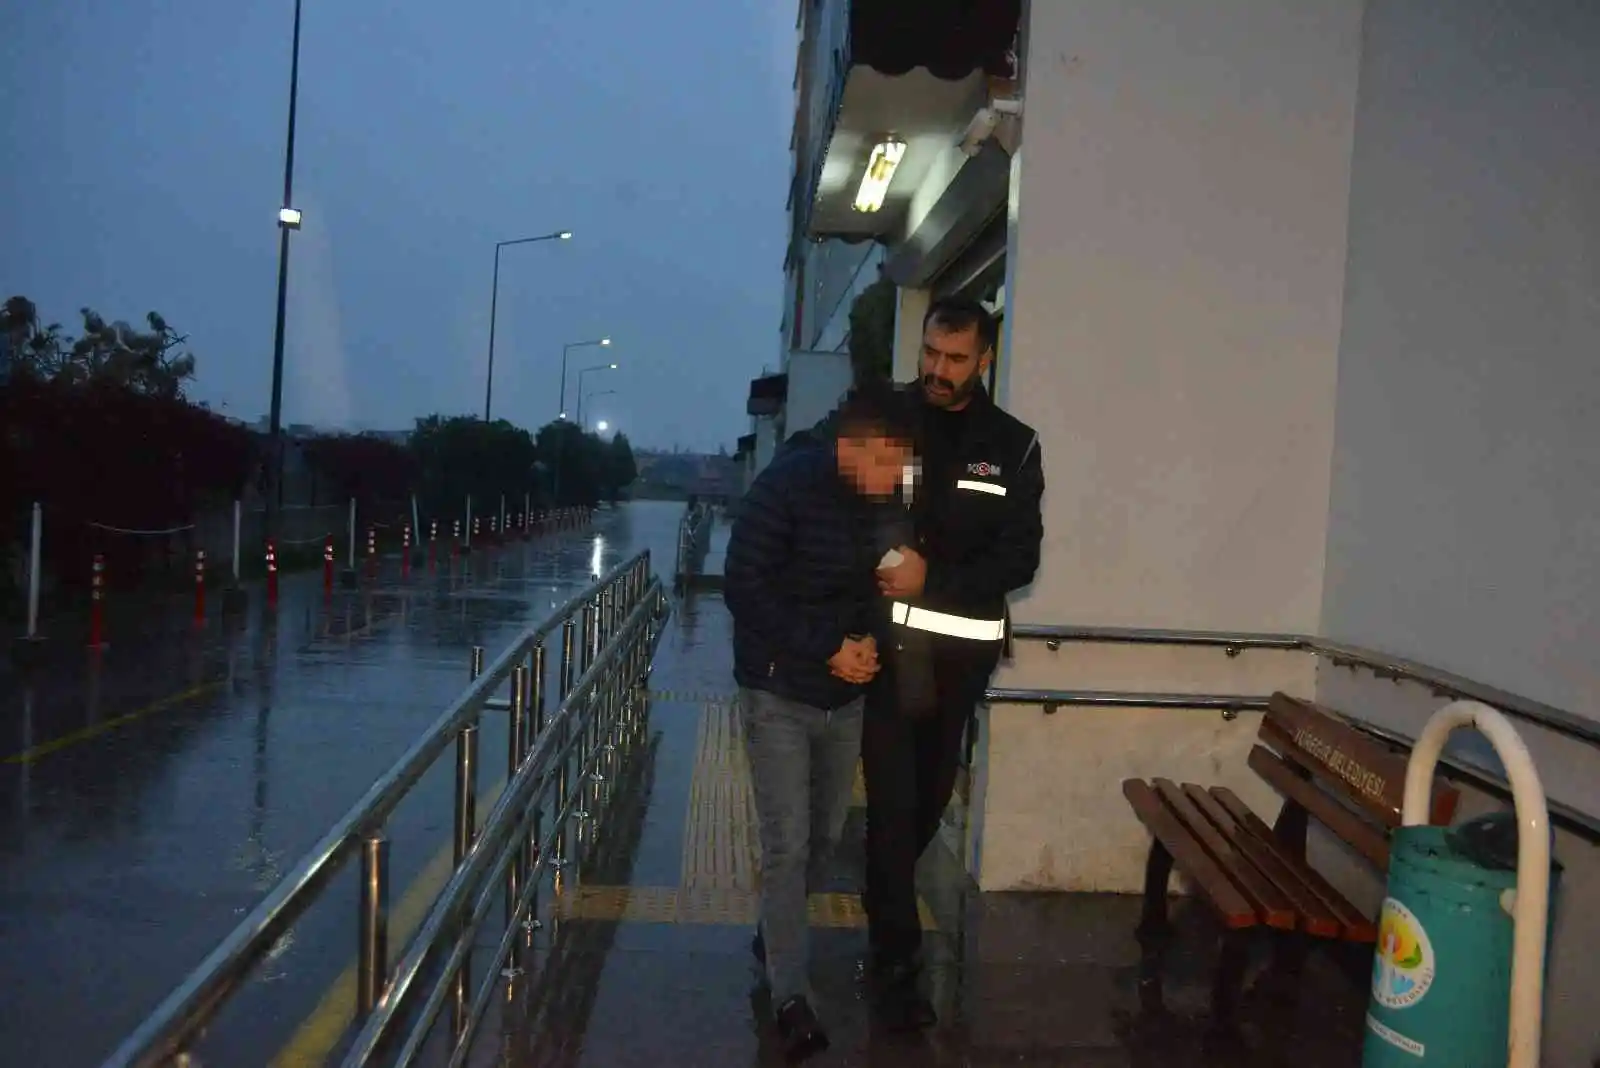 Adana’da organize suç örgütü operasyonu
